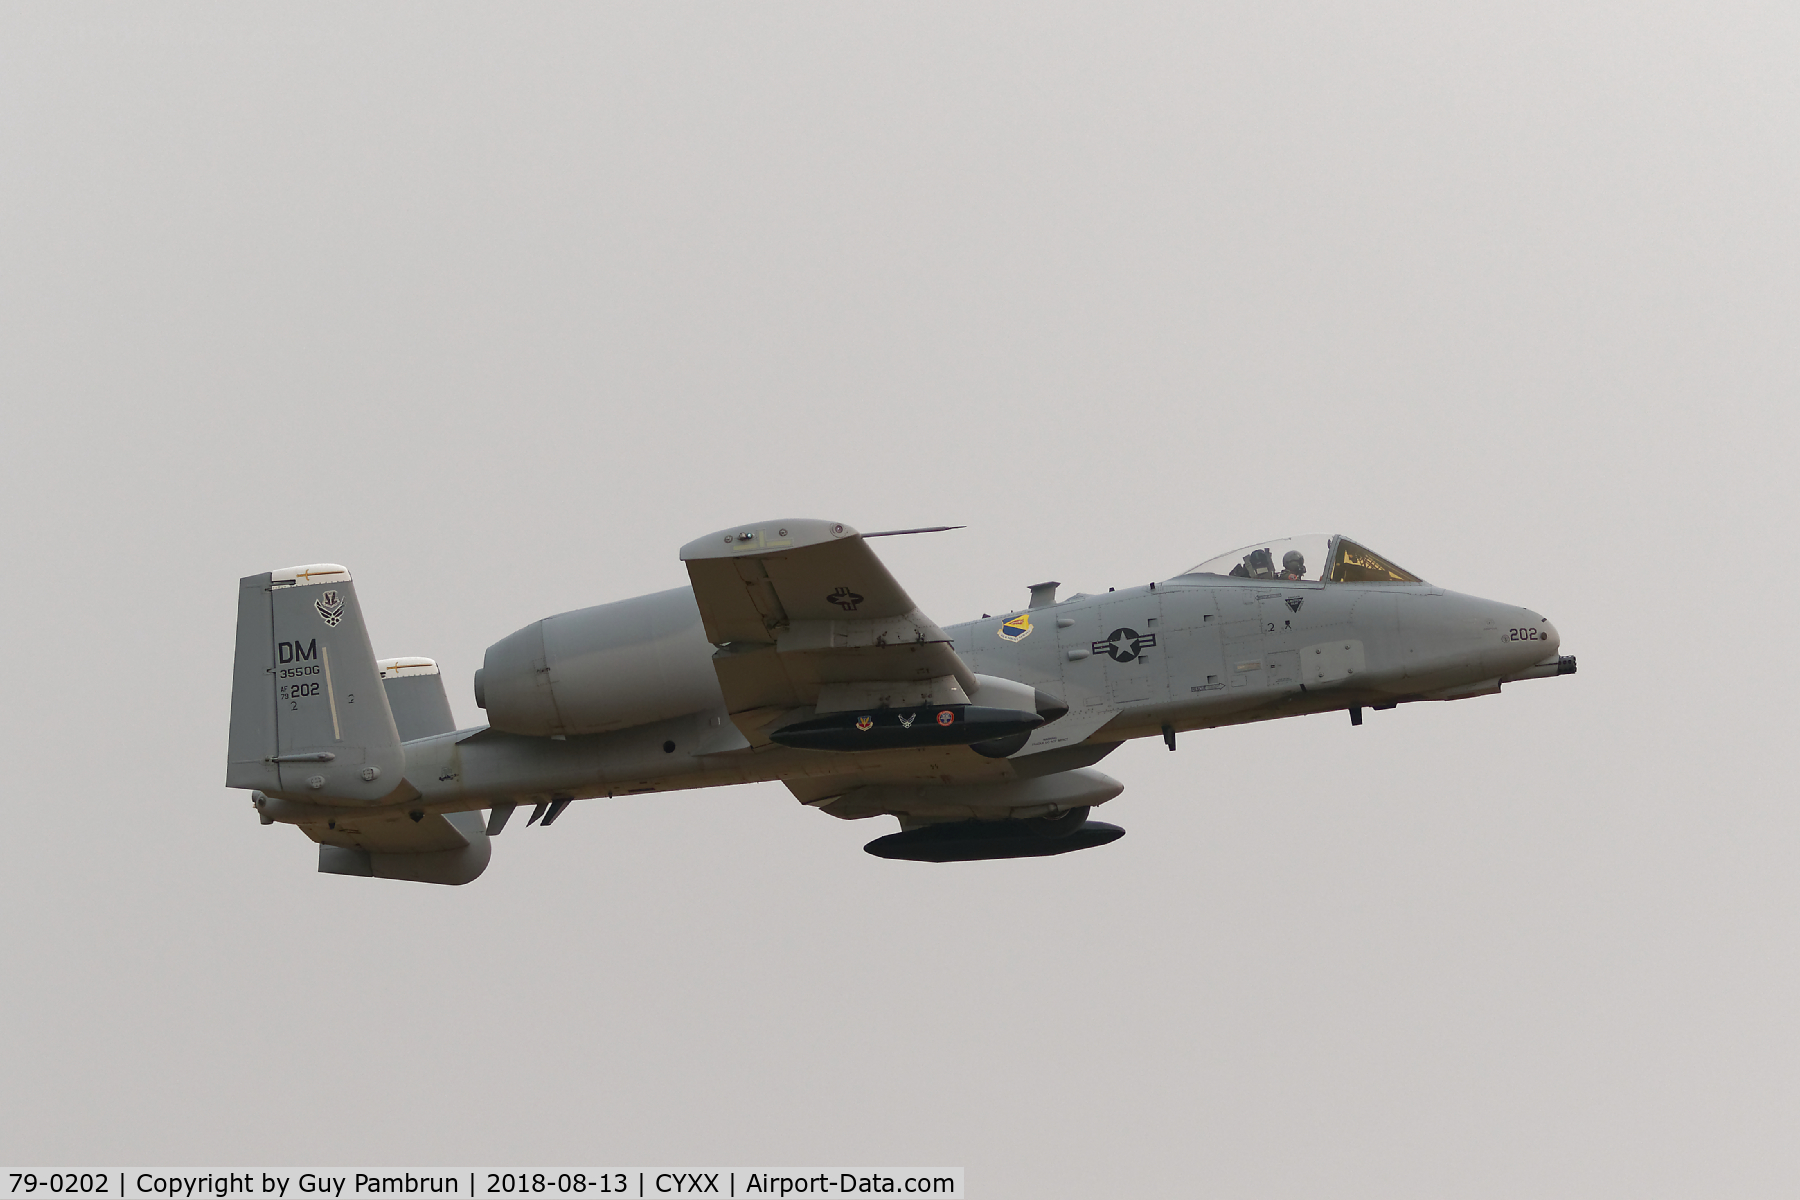 79-0202, 1979 Fairchild Republic A-10C Thunderbolt II C/N A10-0466, Departing CYXX on a smokey foggy morning.